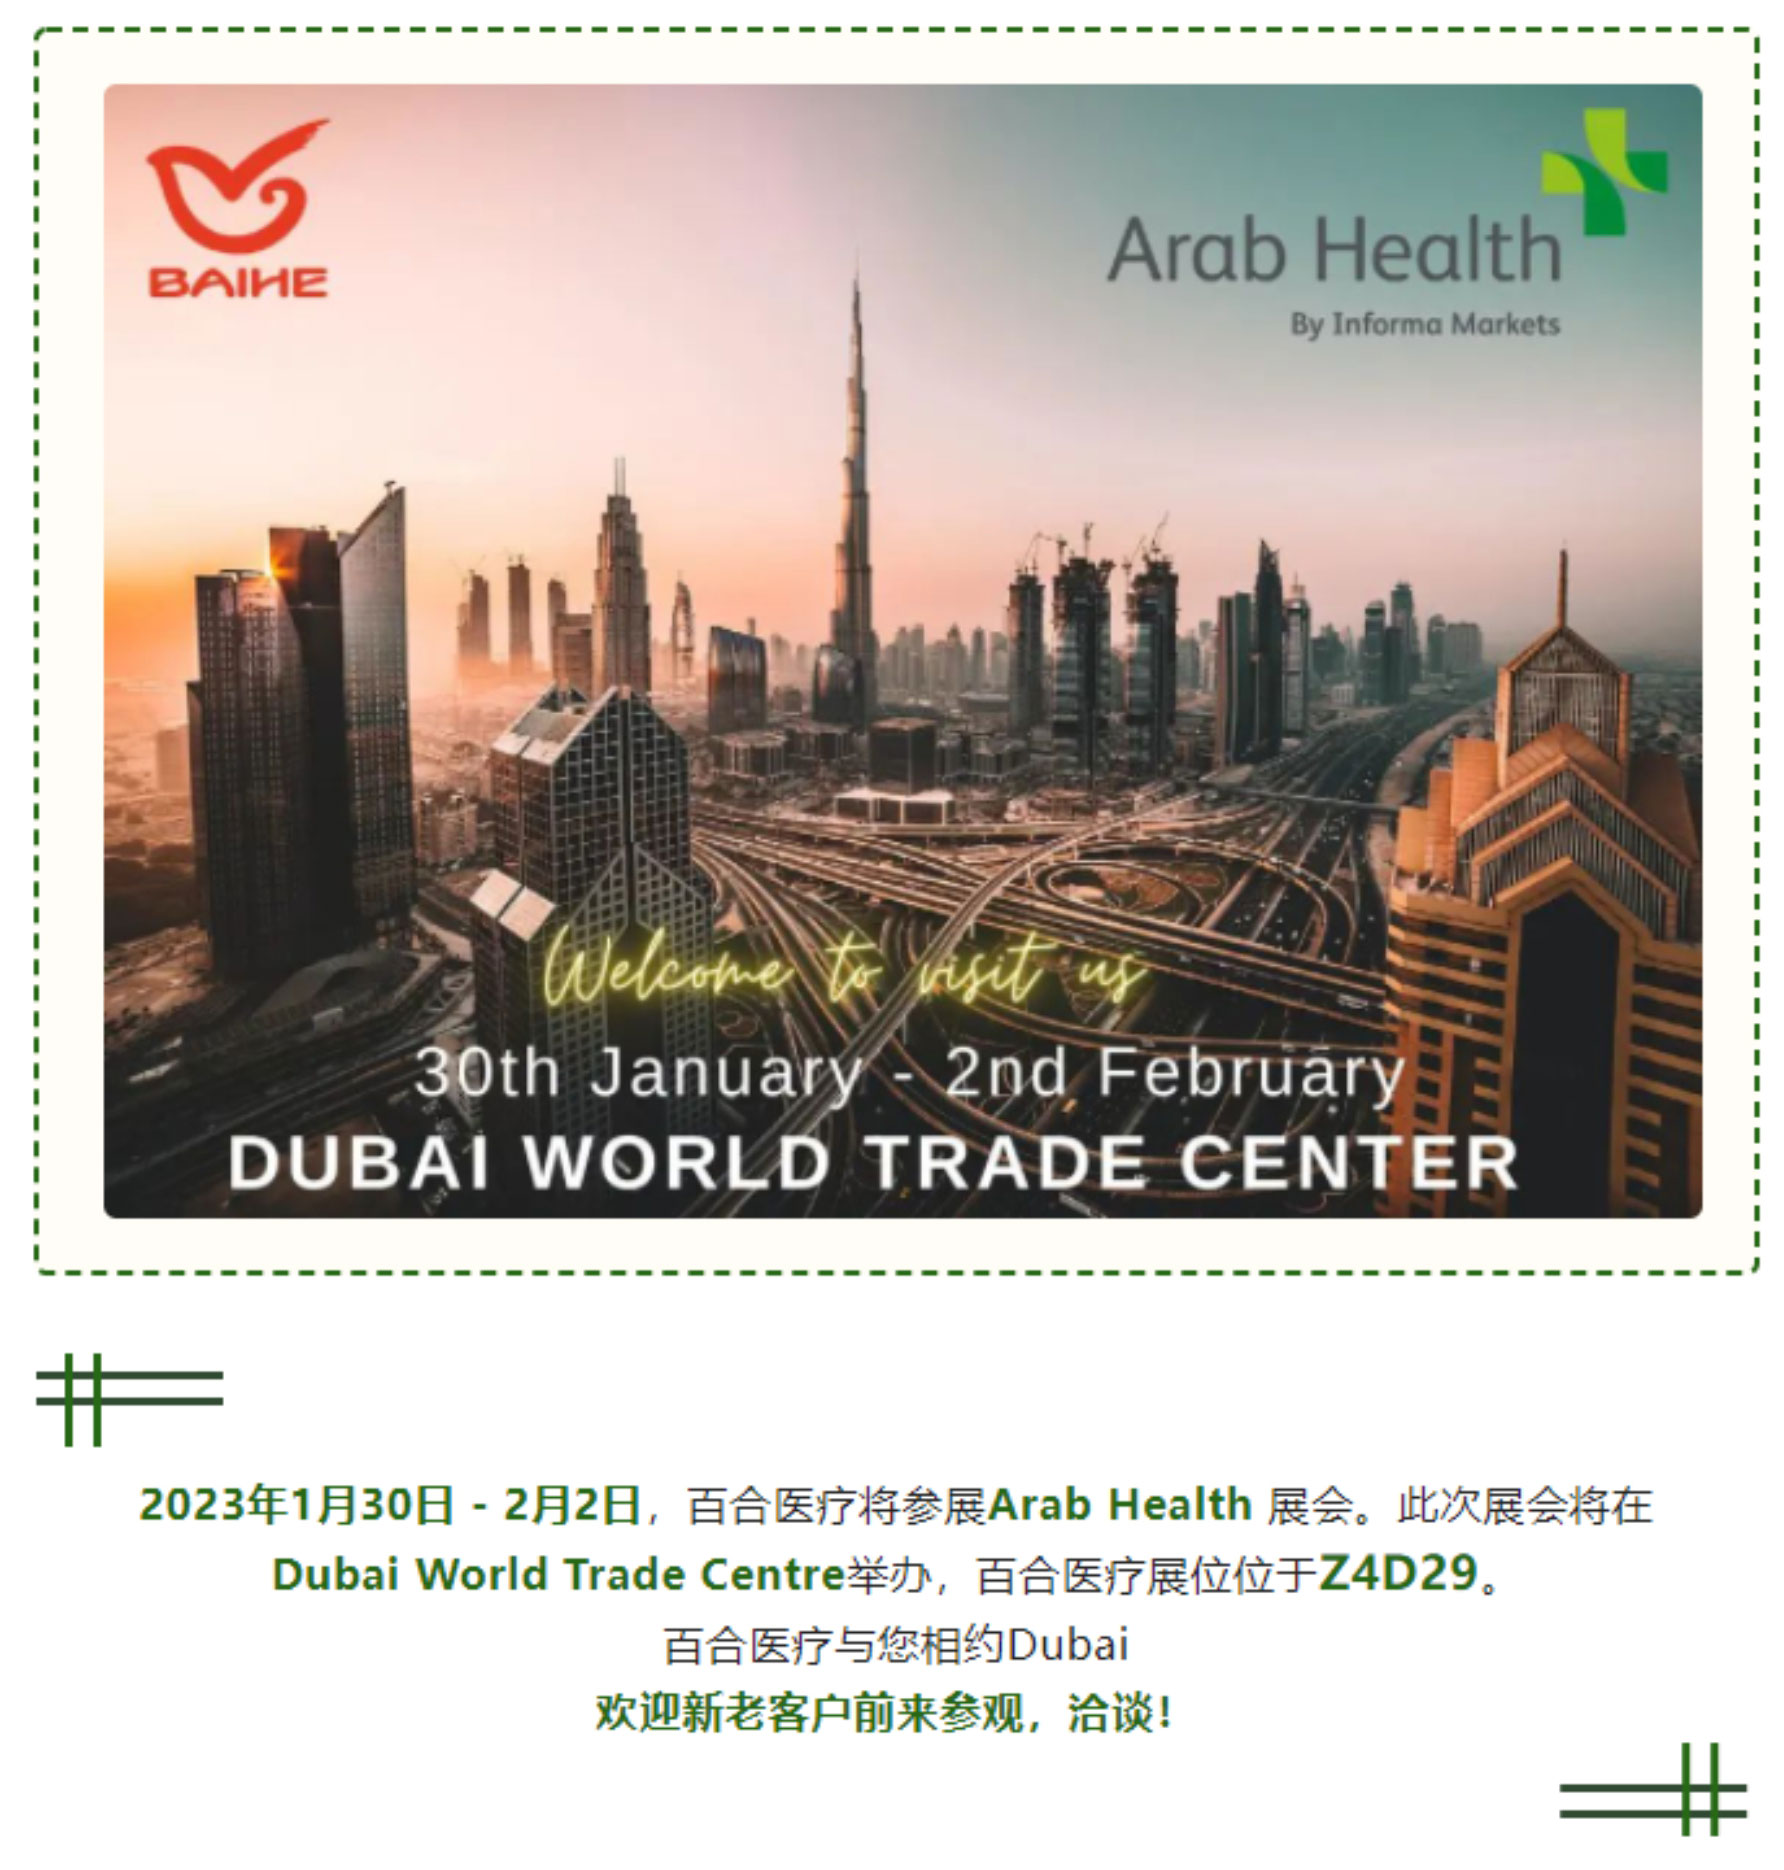 2023年1月30日 - 2月2日Arab Health 展会，百合医疗欢迎您